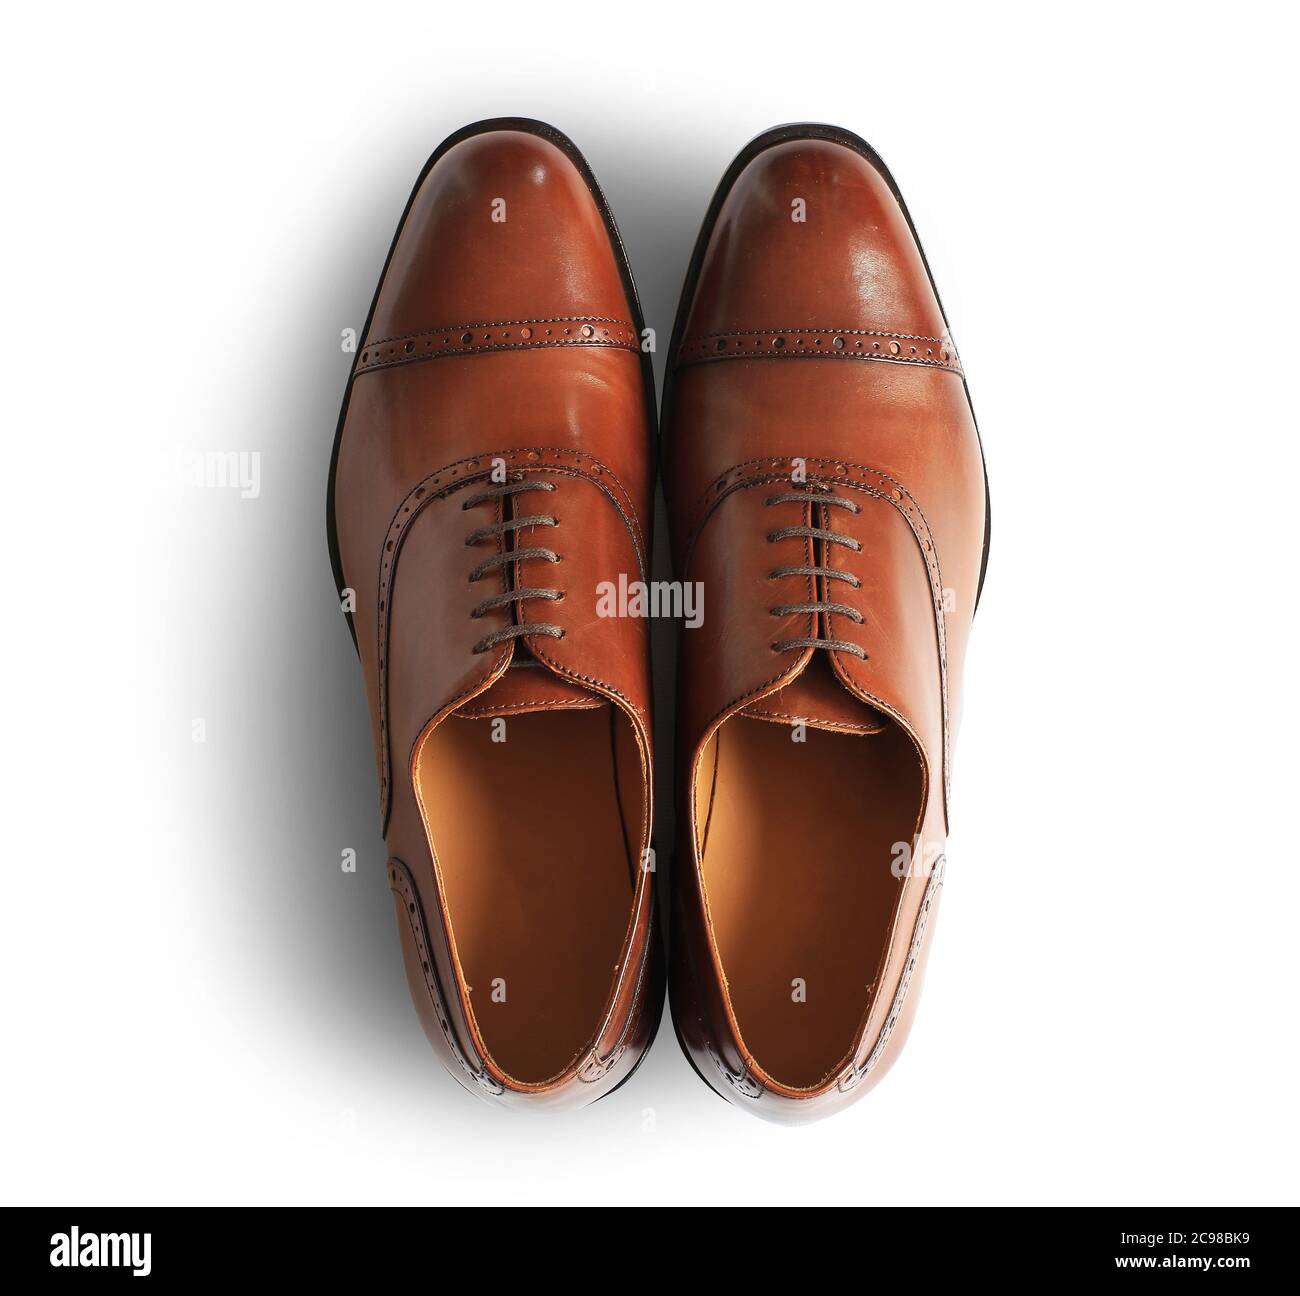 Chaussures en cuir marron pour homme de style classique Photo Stock - Alamy